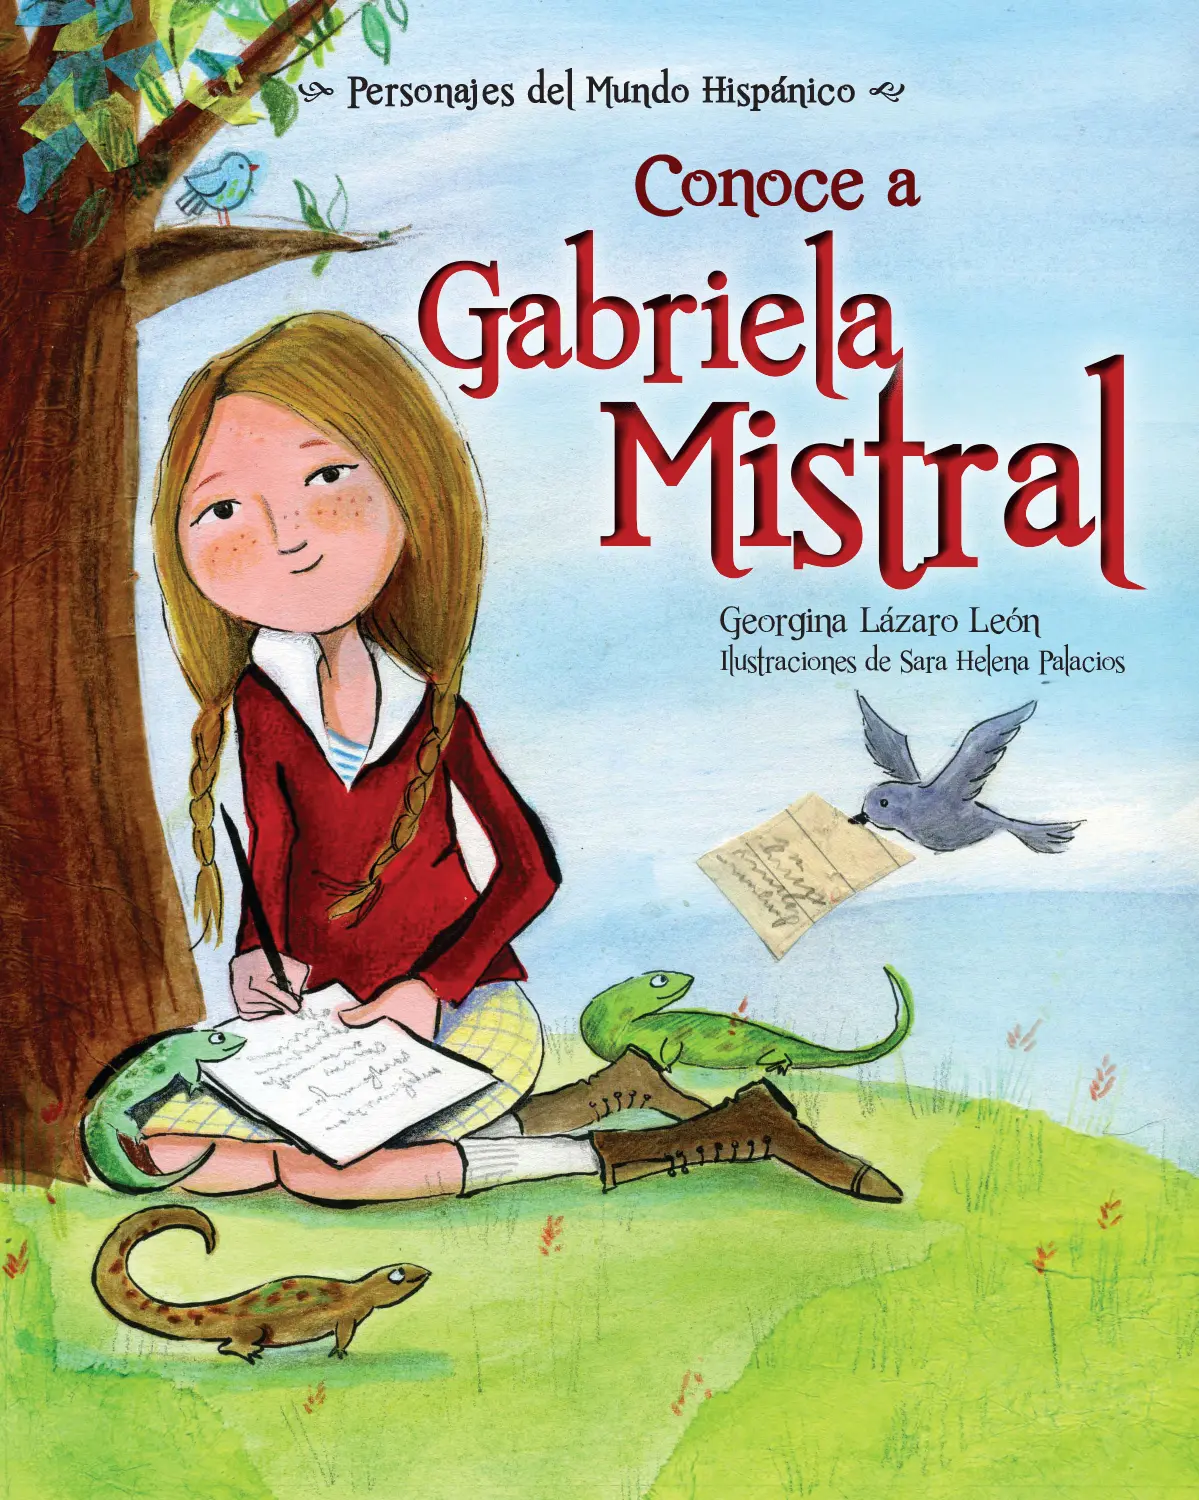 conoce a gabriela mistral - Cuándo se dio a conocer como poeta Gabriela Mistral